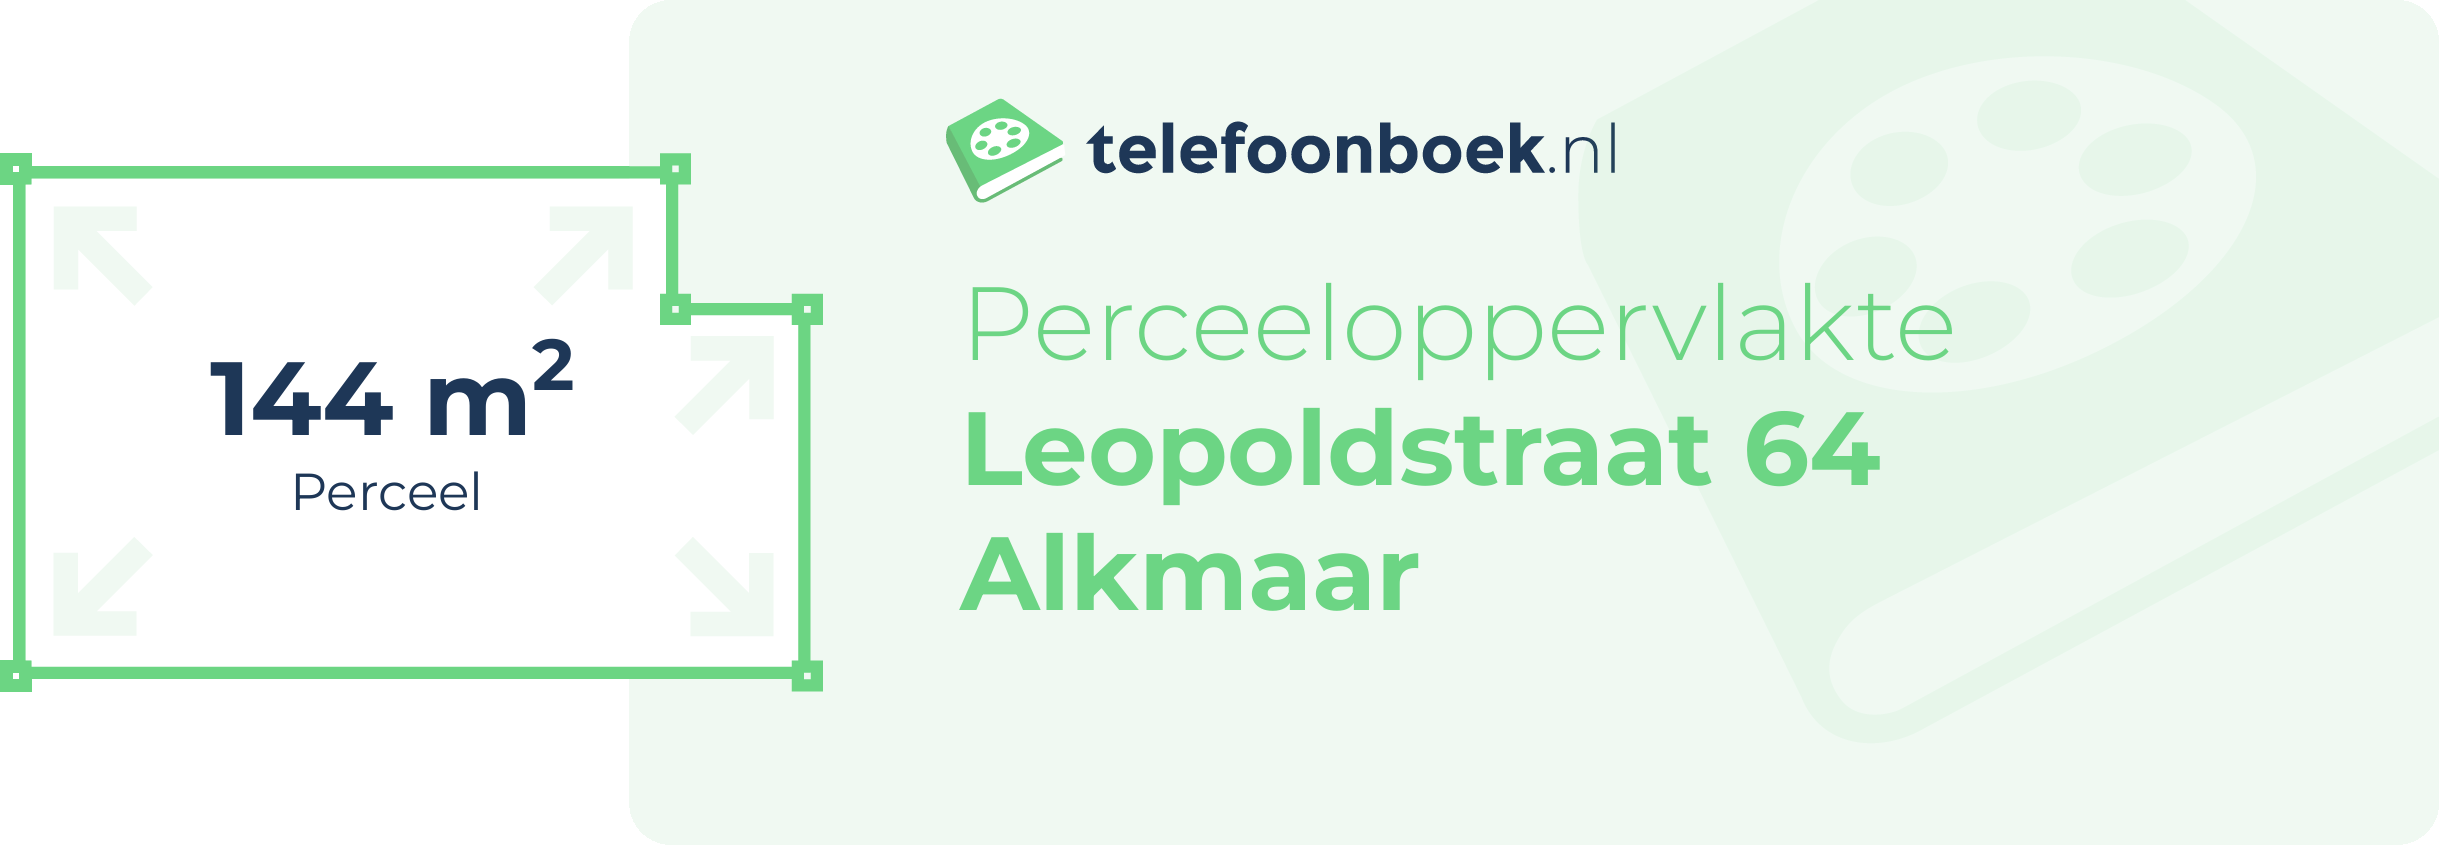 Perceeloppervlakte Leopoldstraat 64 Alkmaar